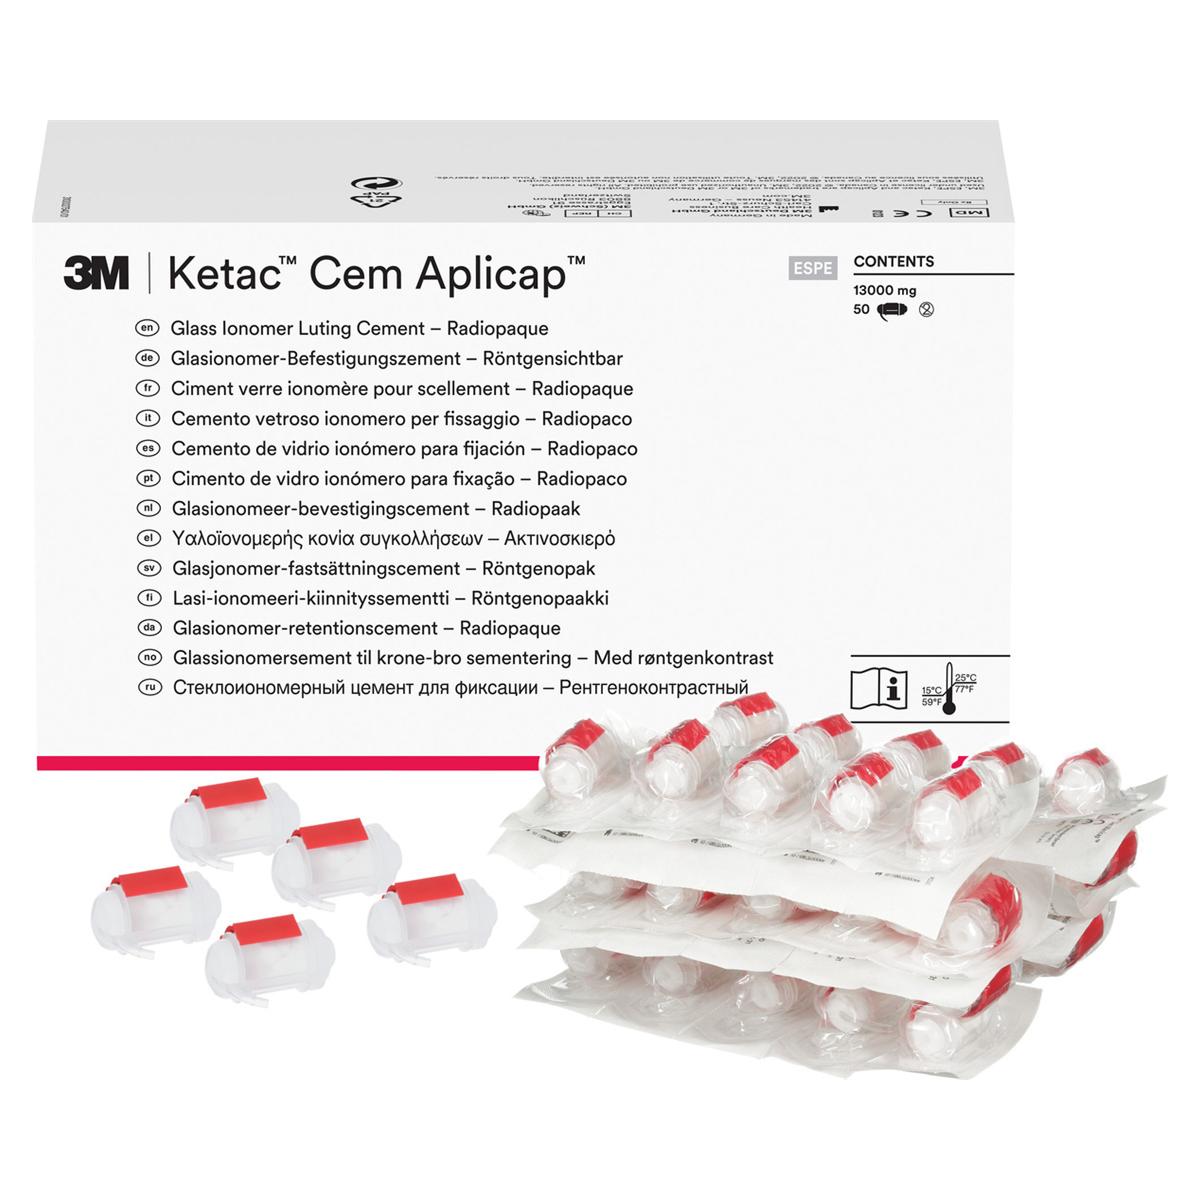 3M Ketac™ Cem Aplicap™ - Nachfüllpackung - Kapseln 50 Stück